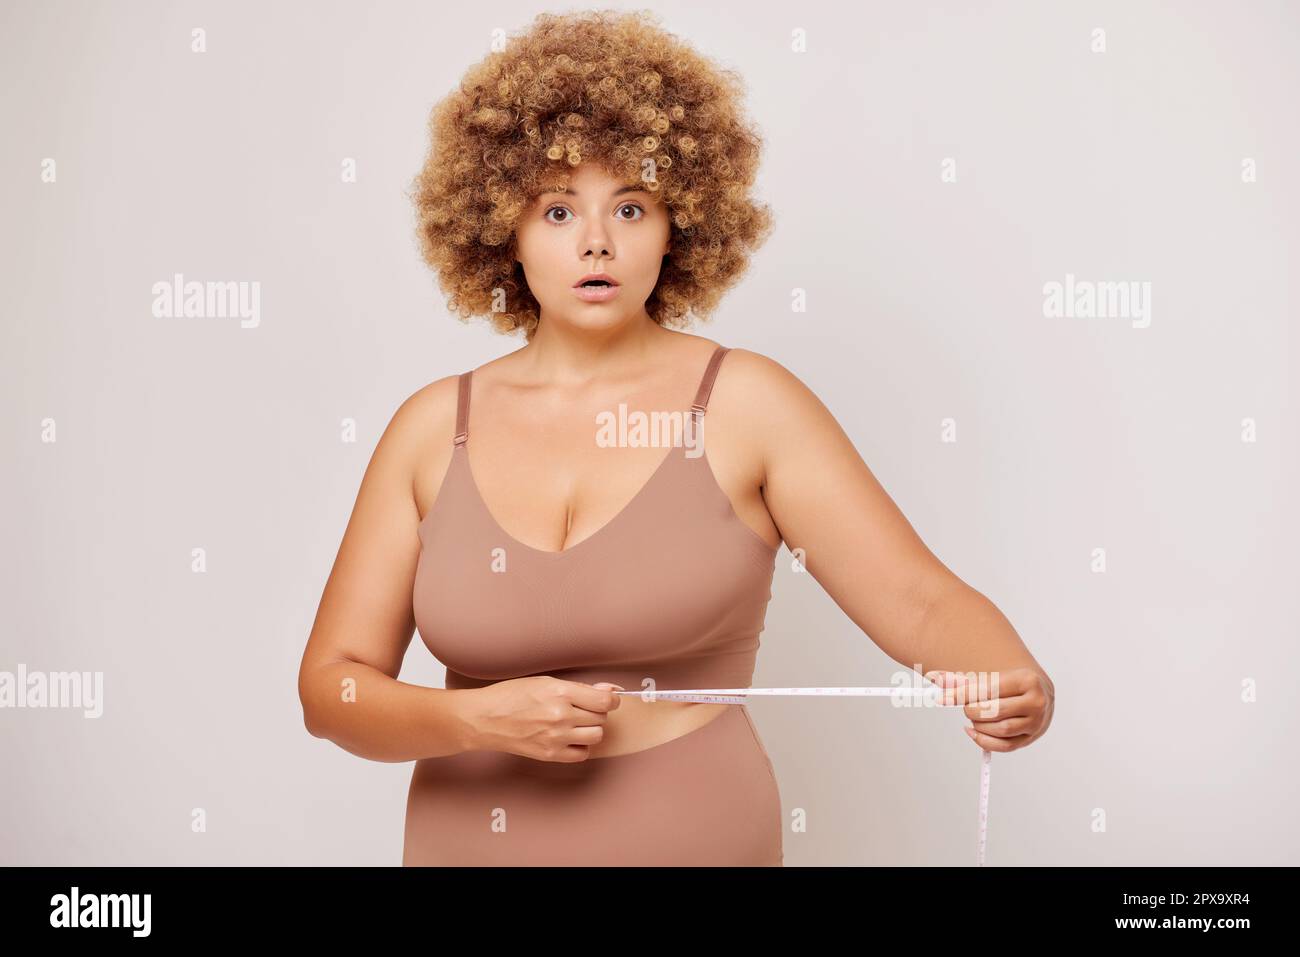 Woman's curvy waist Stock Photo - Alamy